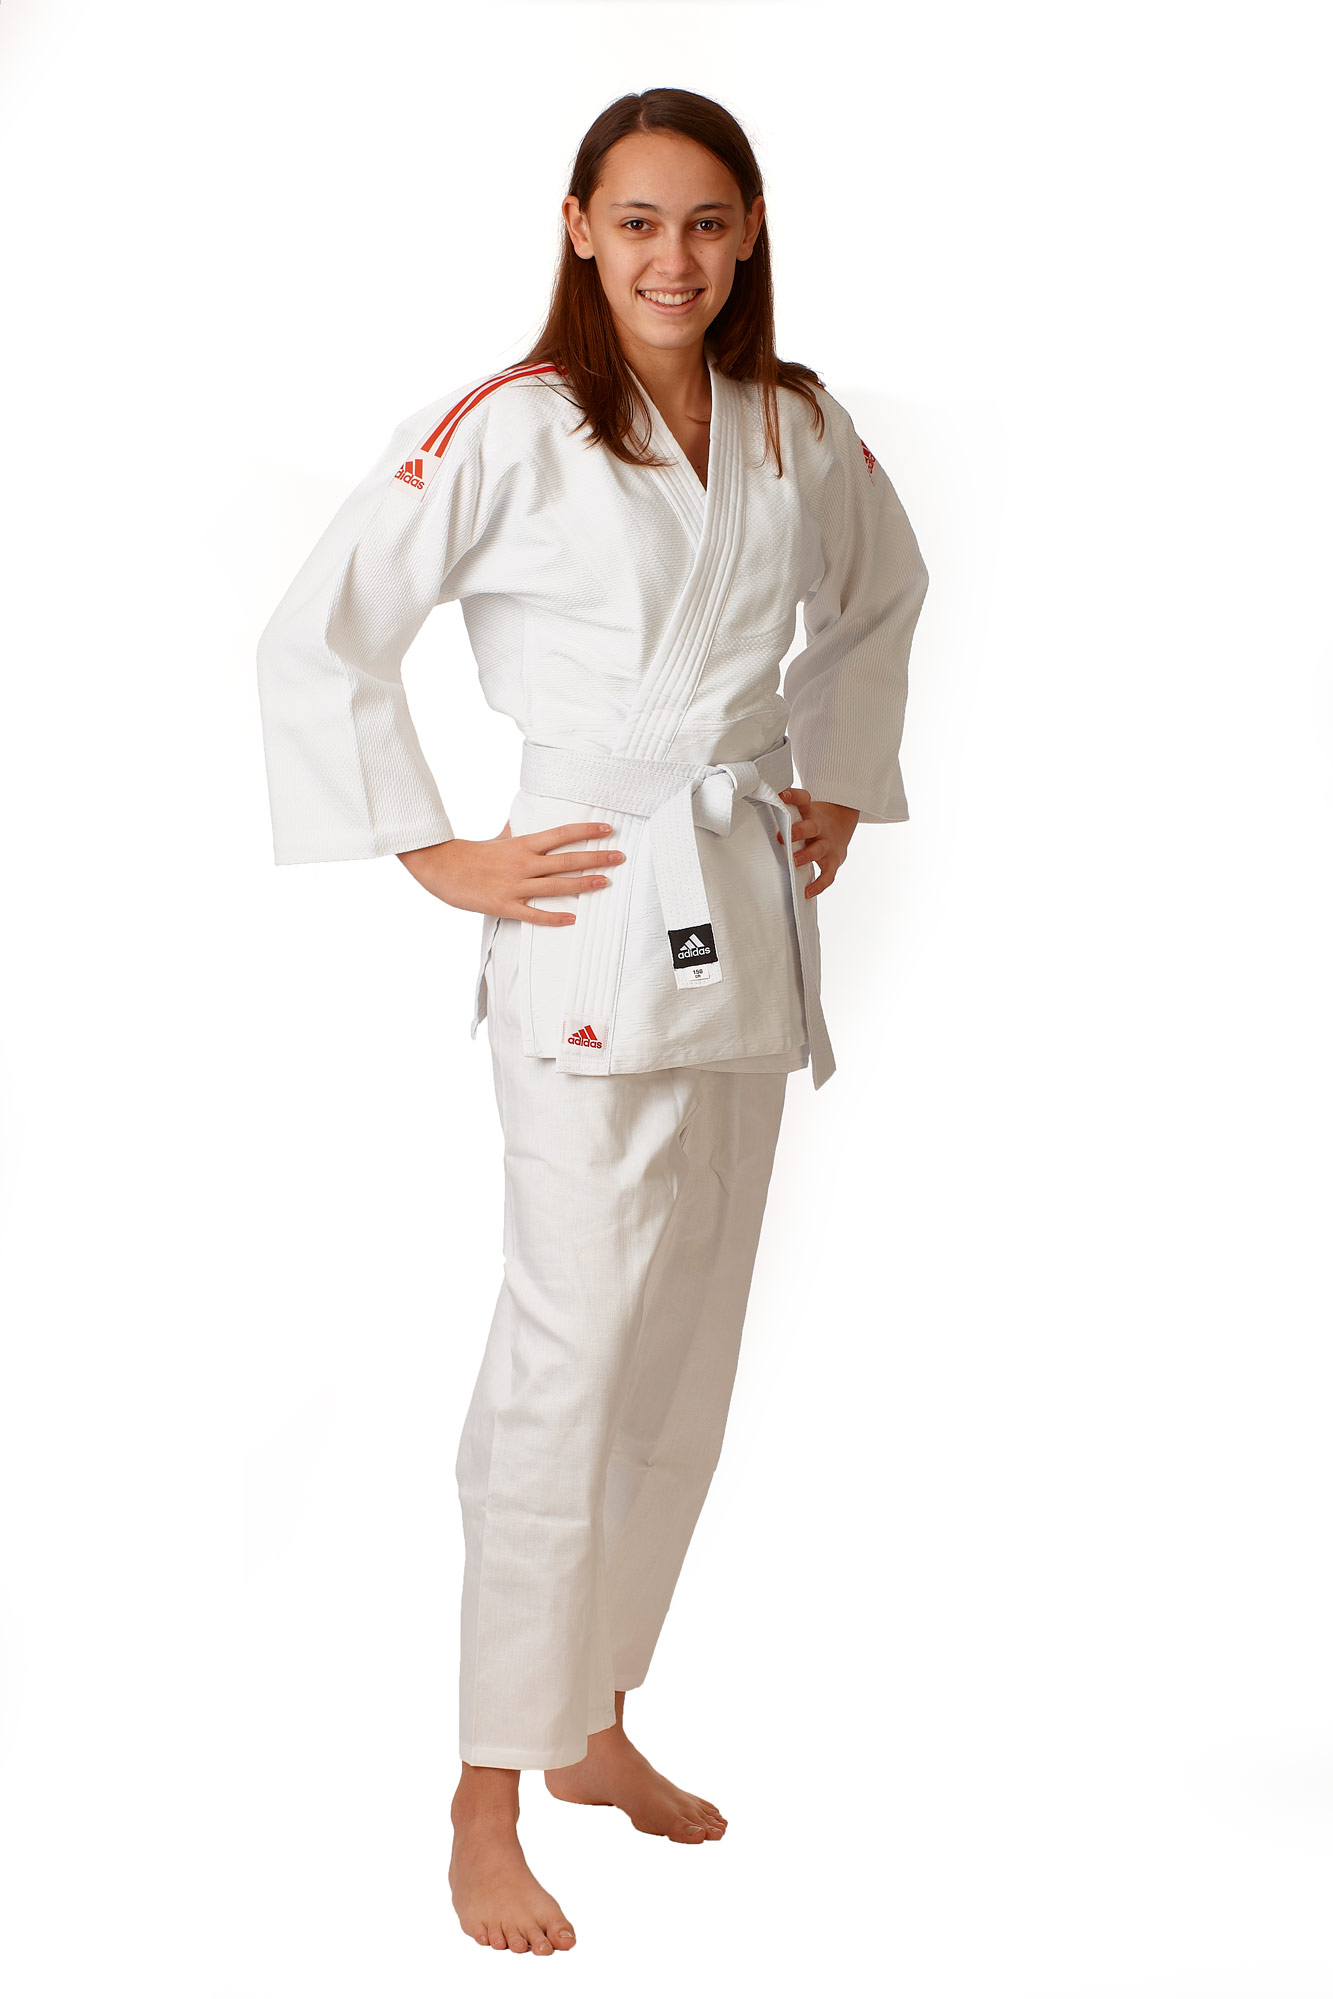 adidas judo gi Club J350E white/red stripes